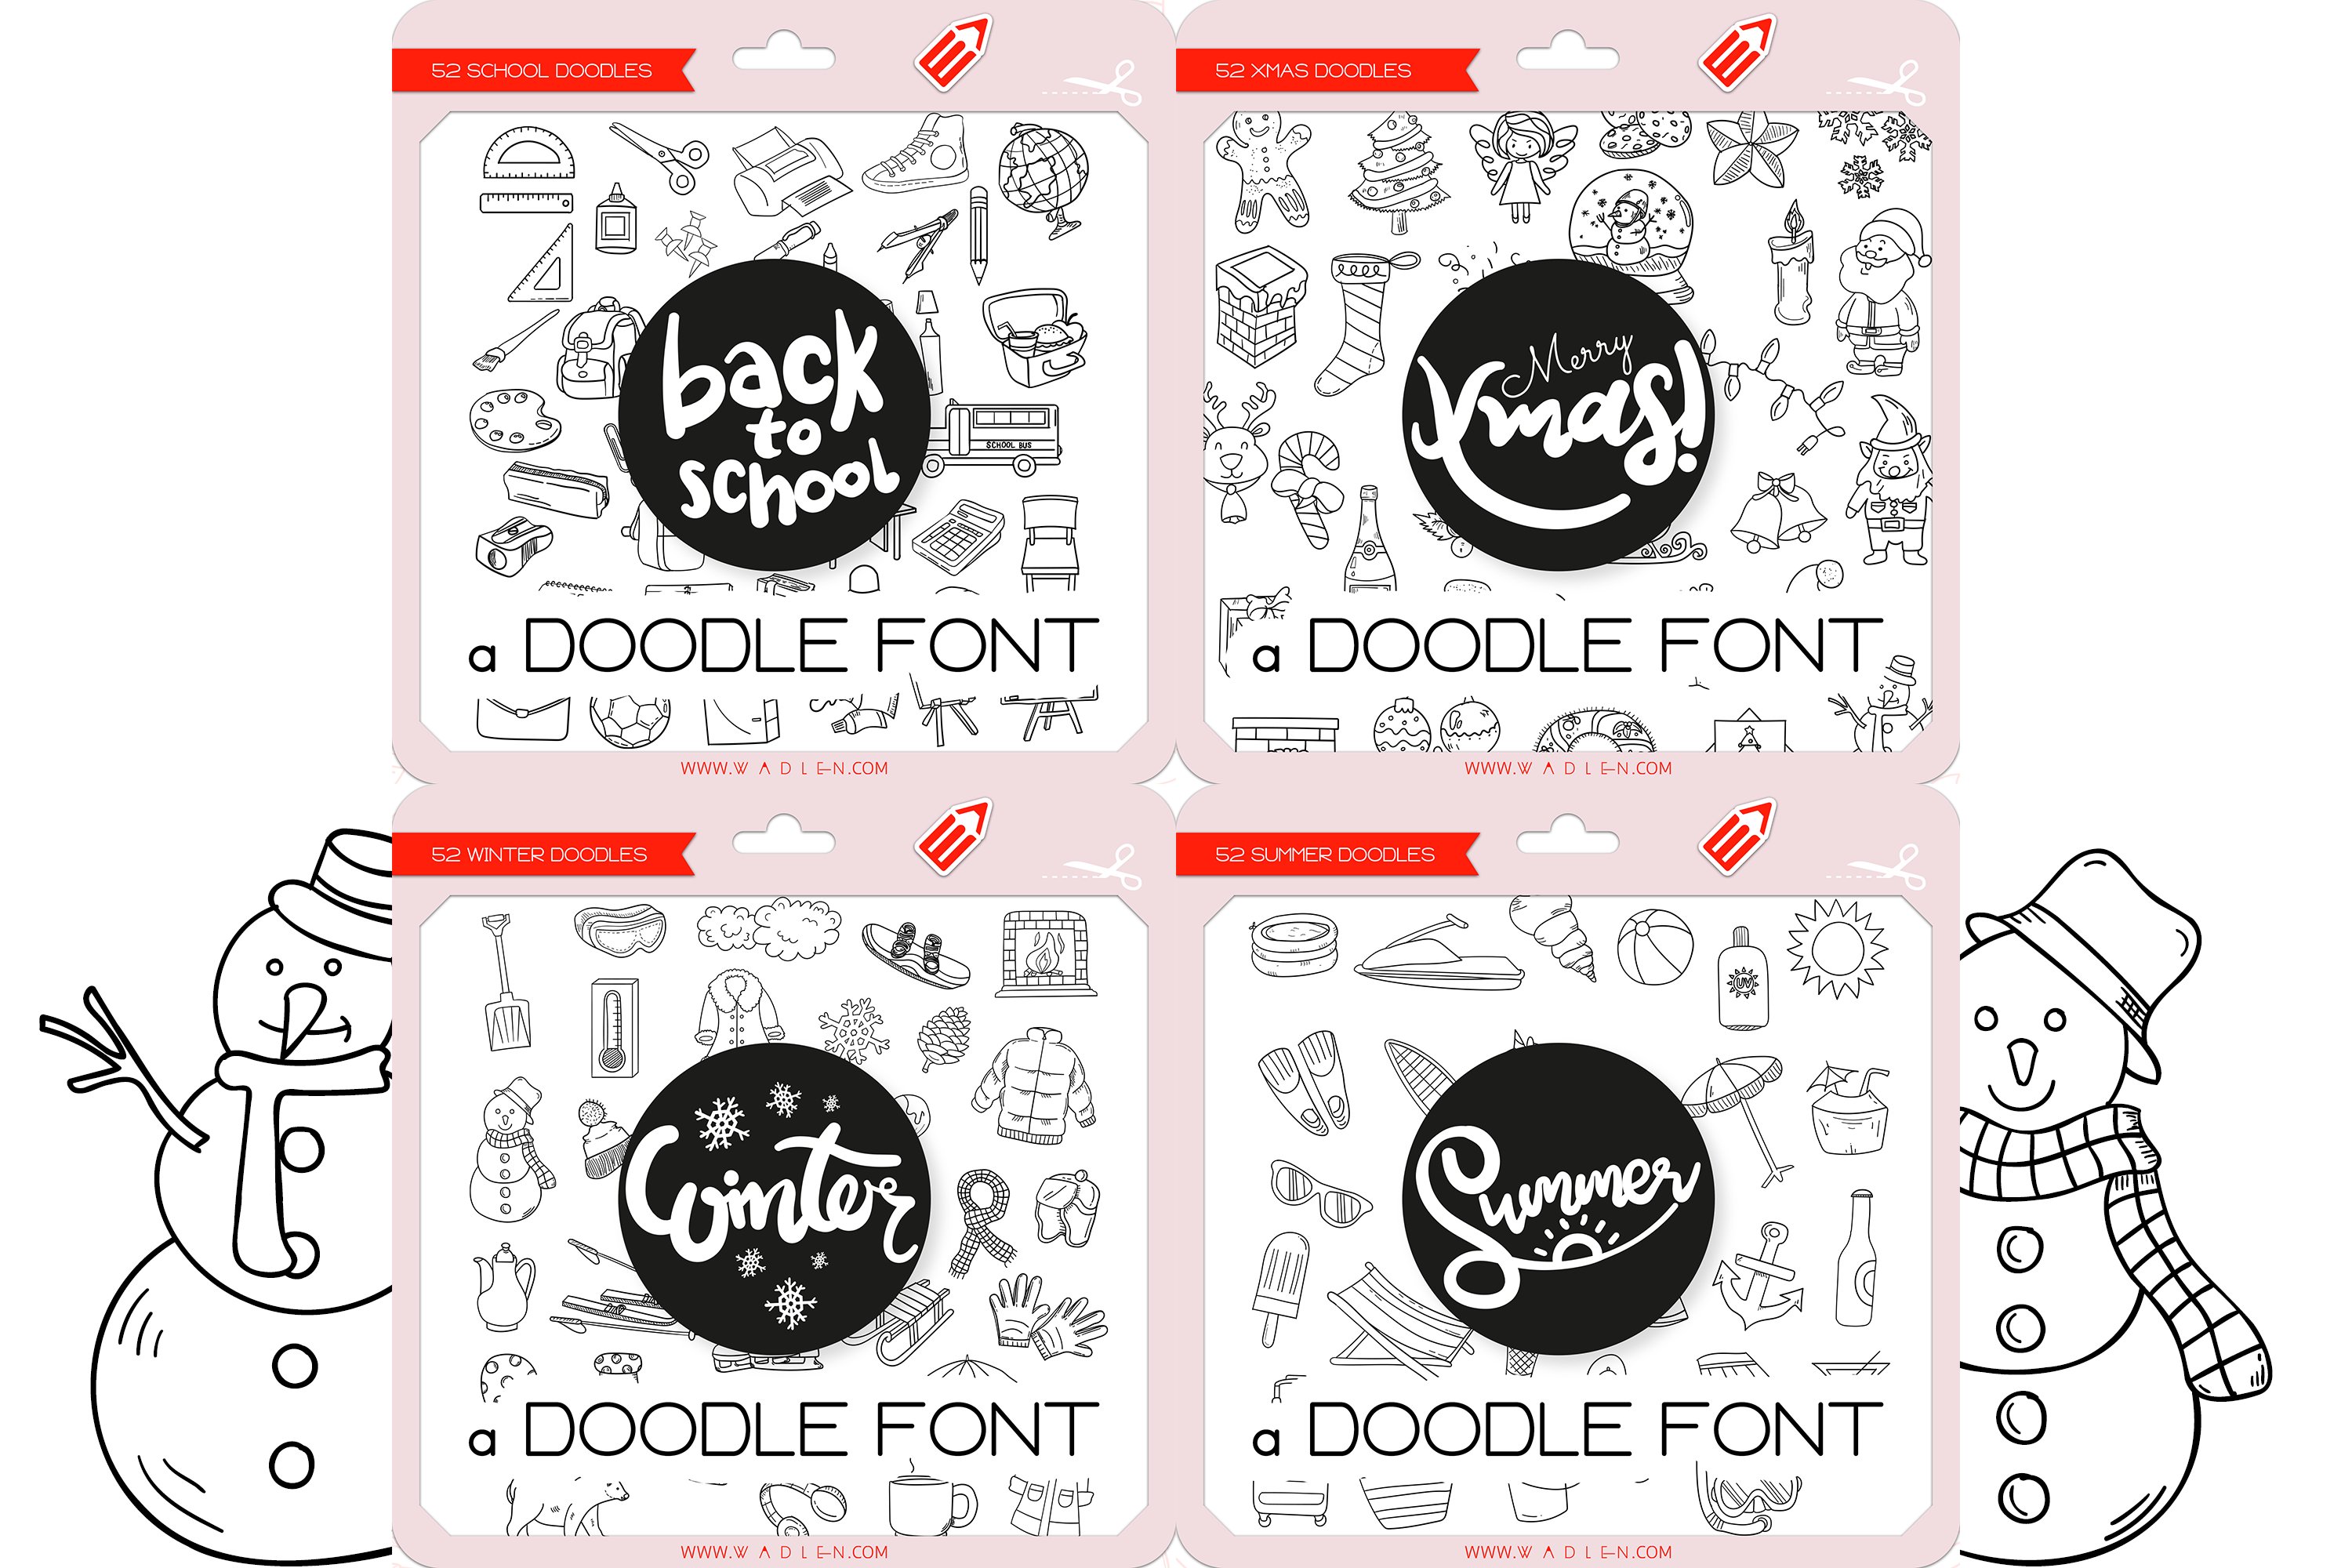 The Doodle Fonts Bundle preview image.